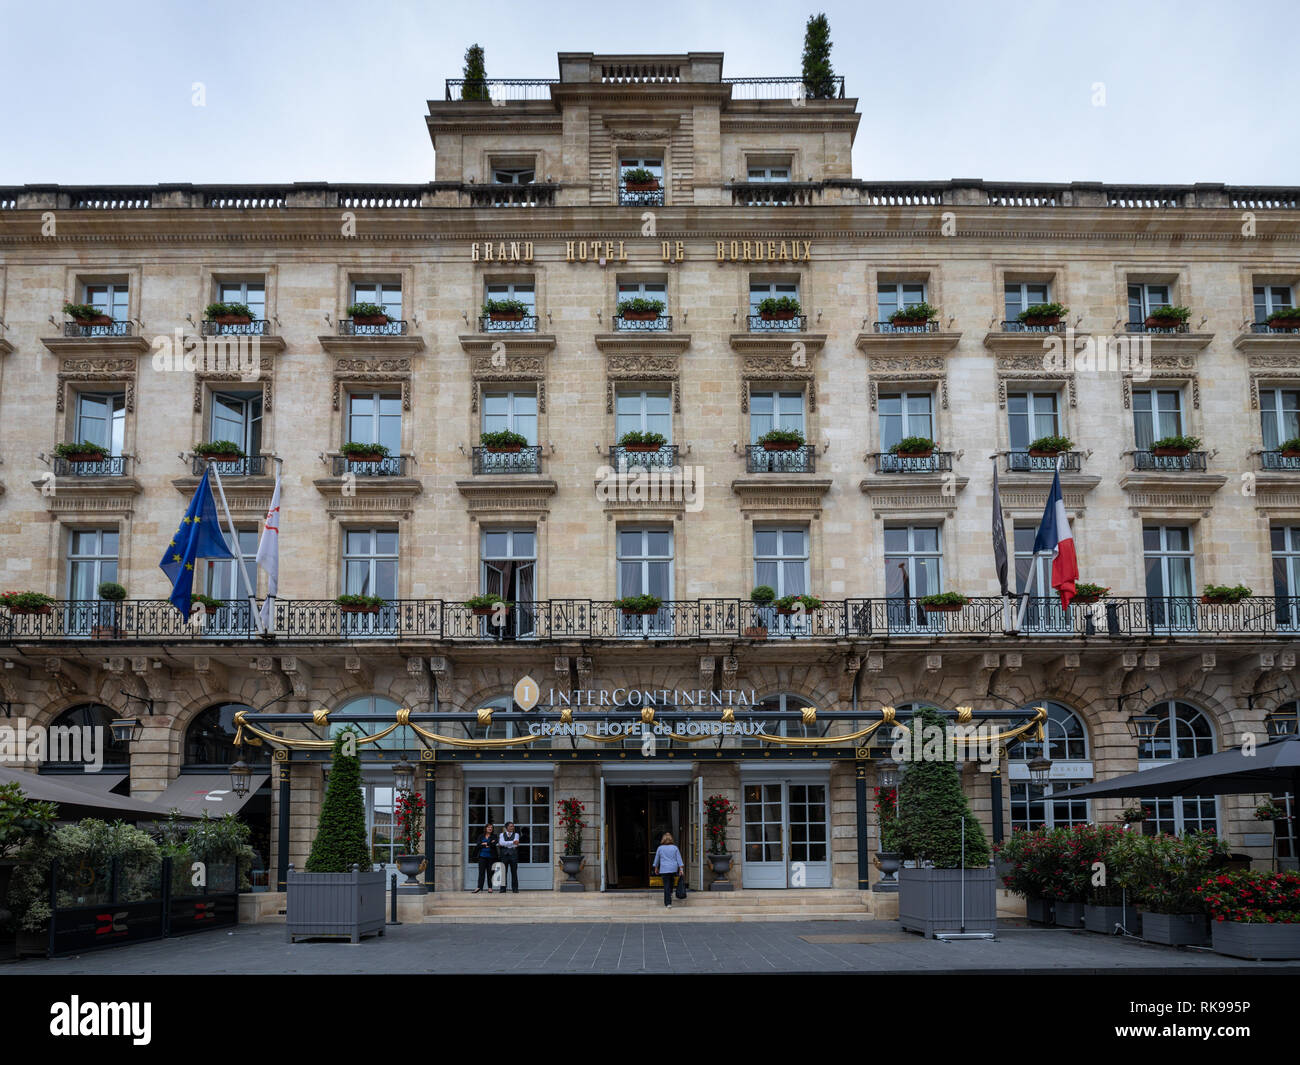 Grand Hotel de Bordeaux, Bordeaux, Gironde, Aquitaine, France, Europe Stock Photo